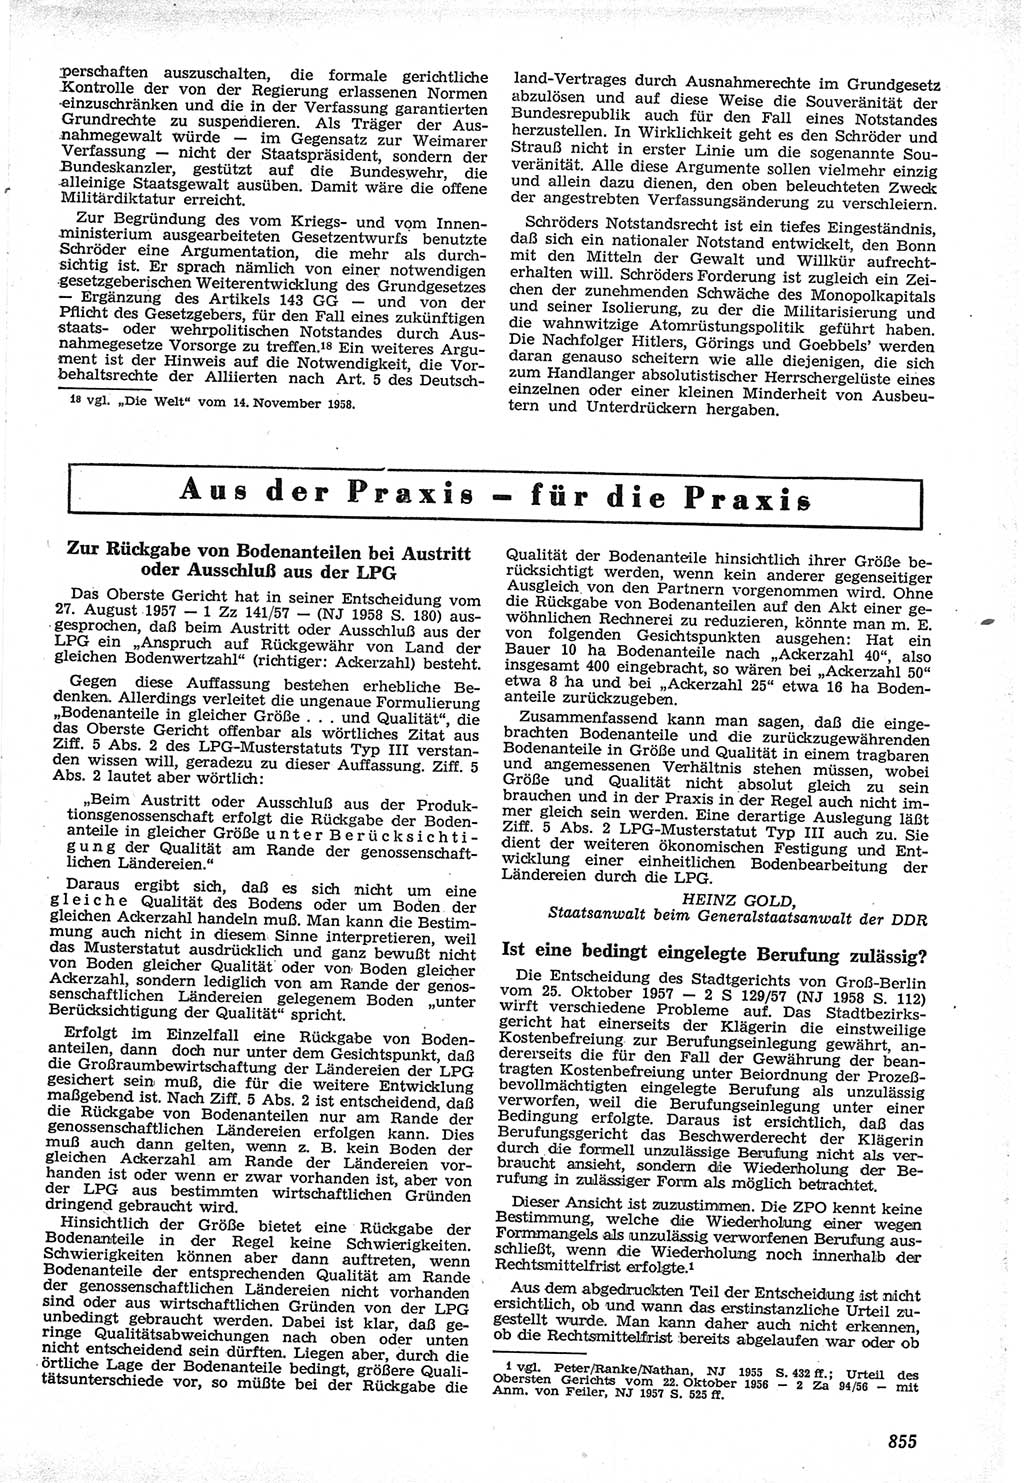 Neue Justiz (NJ), Zeitschrift für Recht und Rechtswissenschaft [Deutsche Demokratische Republik (DDR)], 12. Jahrgang 1958, Seite 855 (NJ DDR 1958, S. 855)